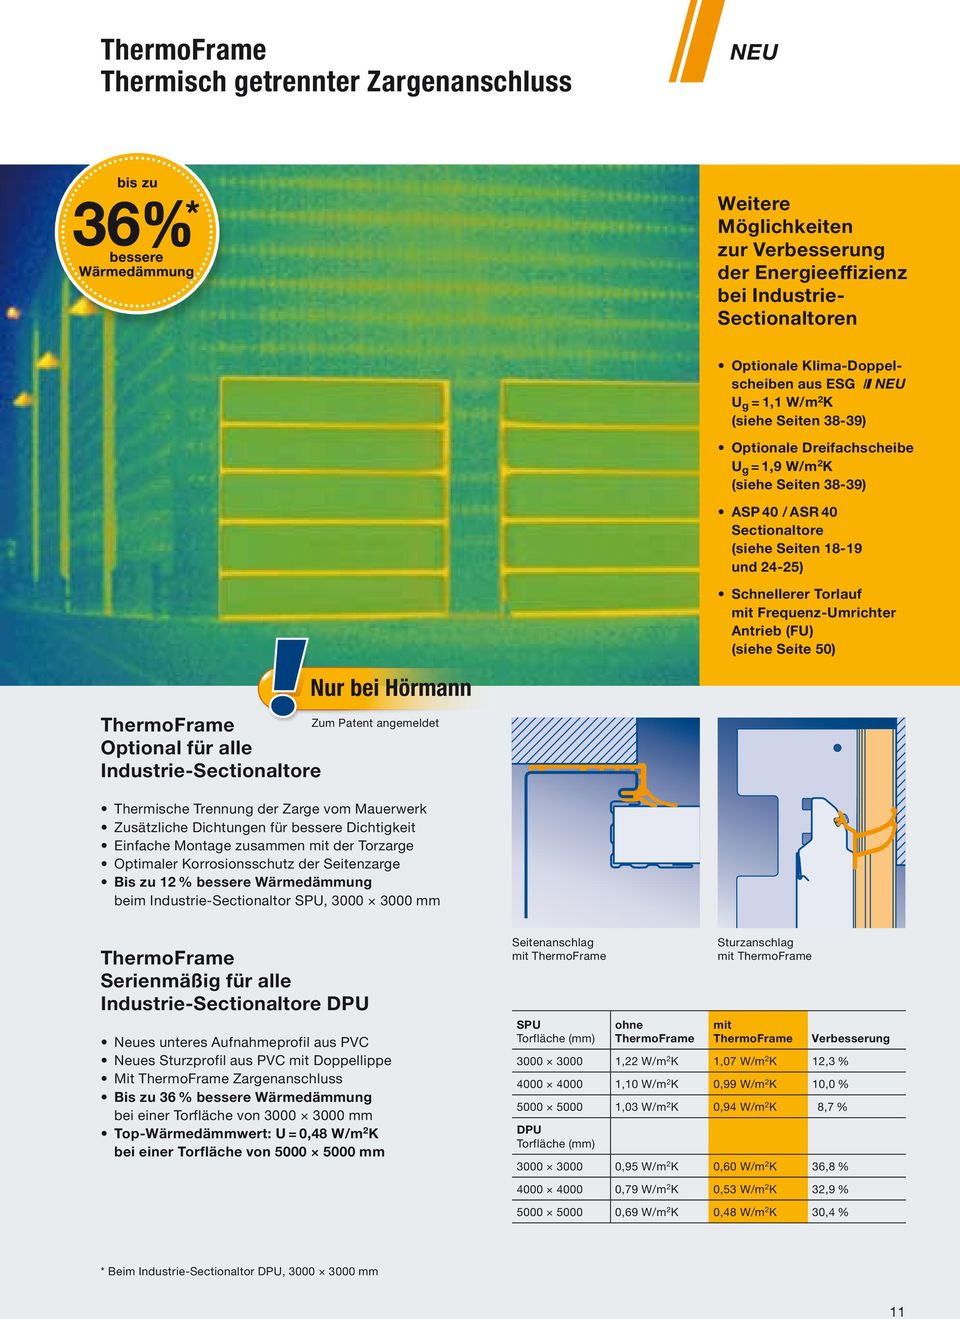 Antrieb (FU) (siehe Seite 50) ThermoFrame Optional für alle Industrie-Sectionaltore Nur bei Hörmann Zum Patent angemeldet Thermische Trennung der Zarge vom Mauerwerk Zusätzliche Dichtungen für